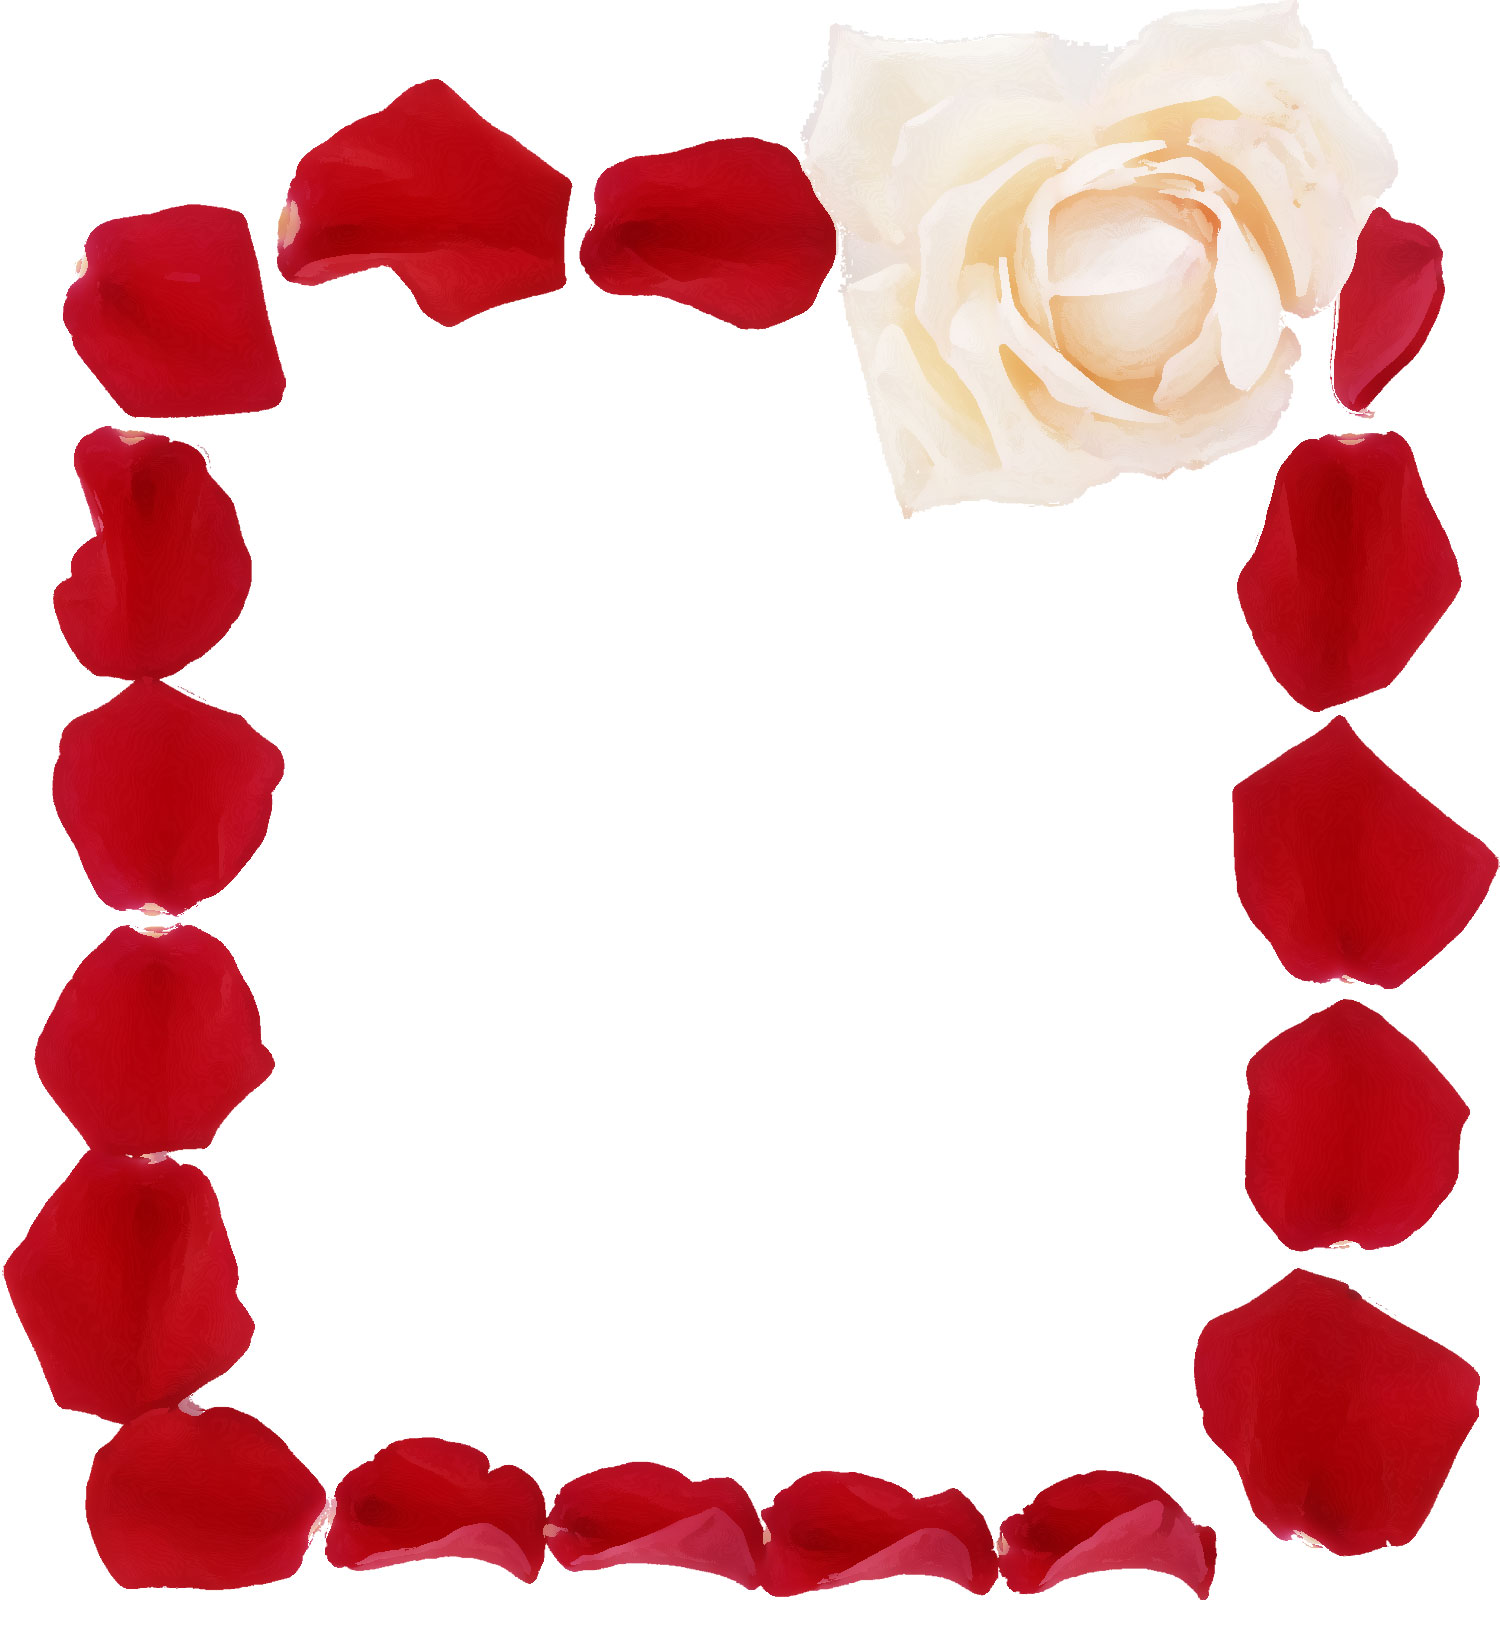 赤い花のイラスト フリー素材 No 572 バラの花びら 赤白